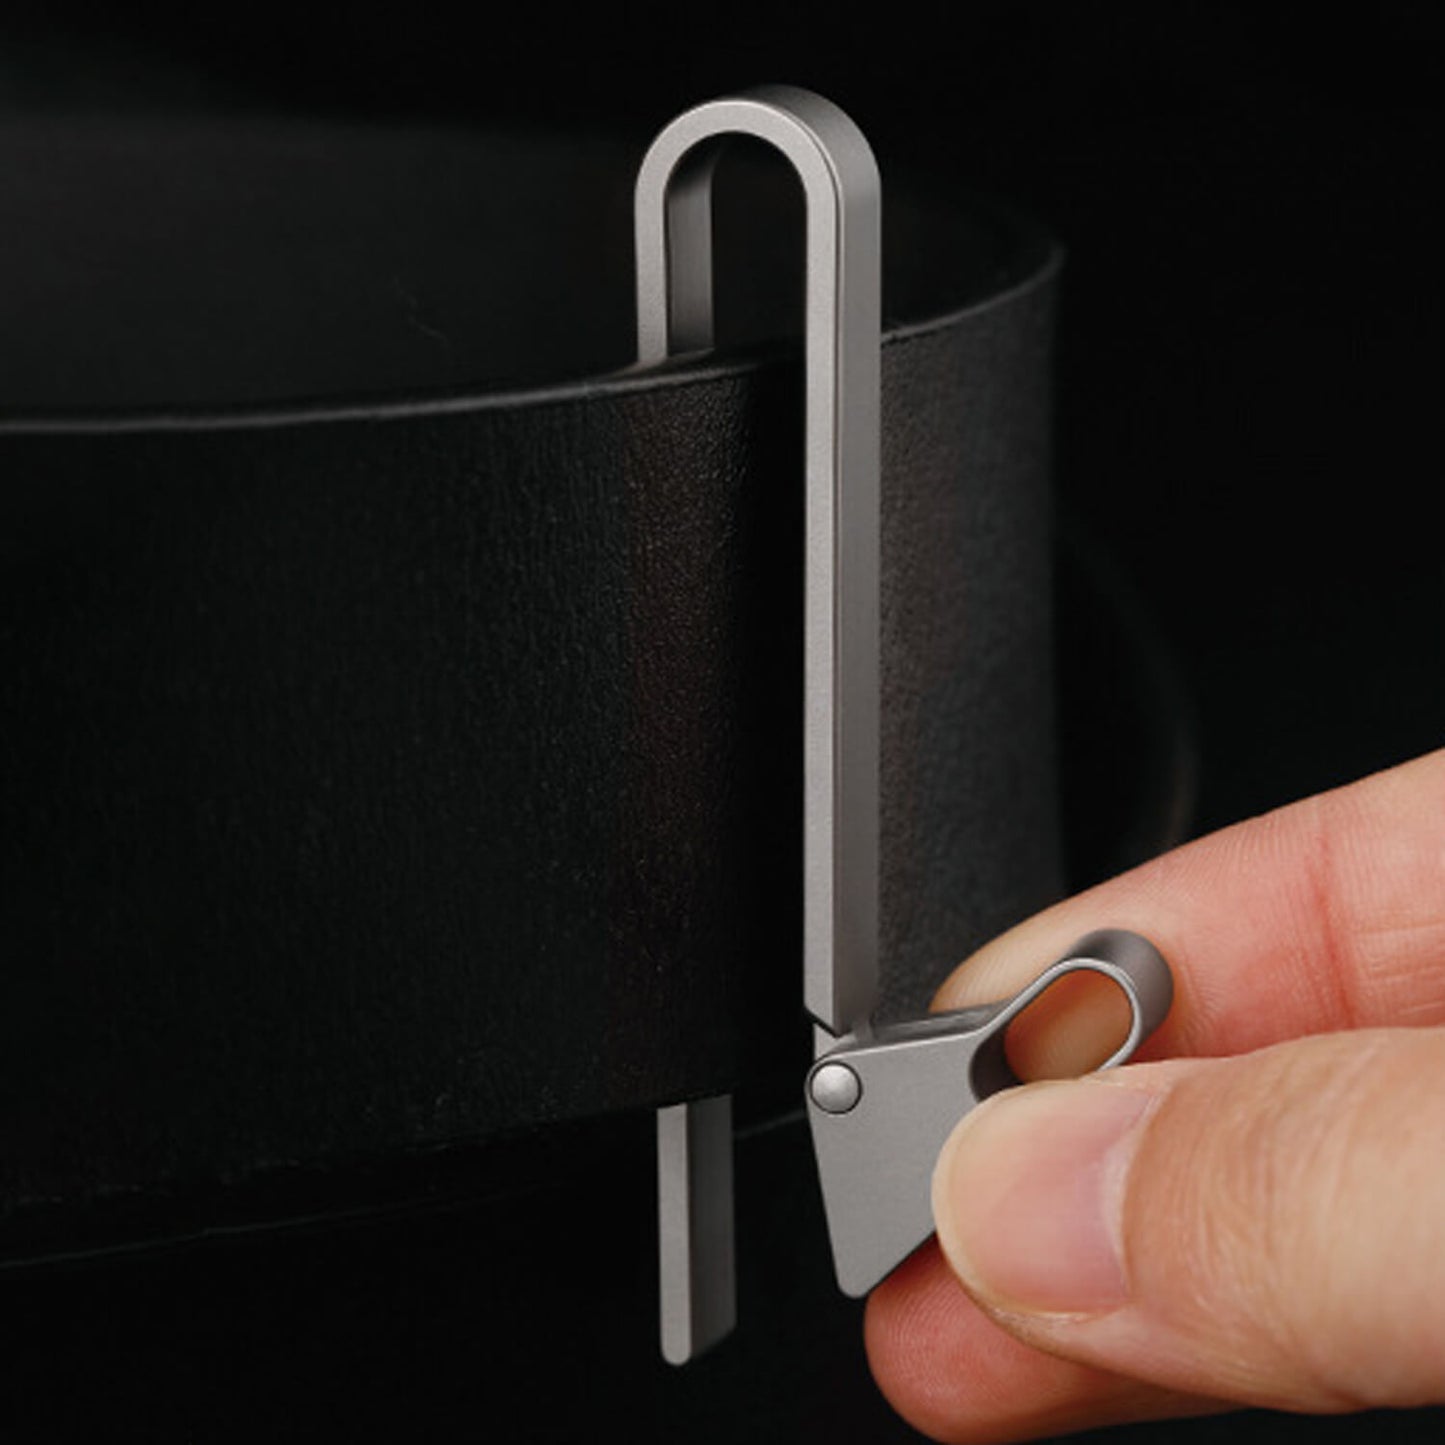 Titanium Snap Lock Belt Carabiner